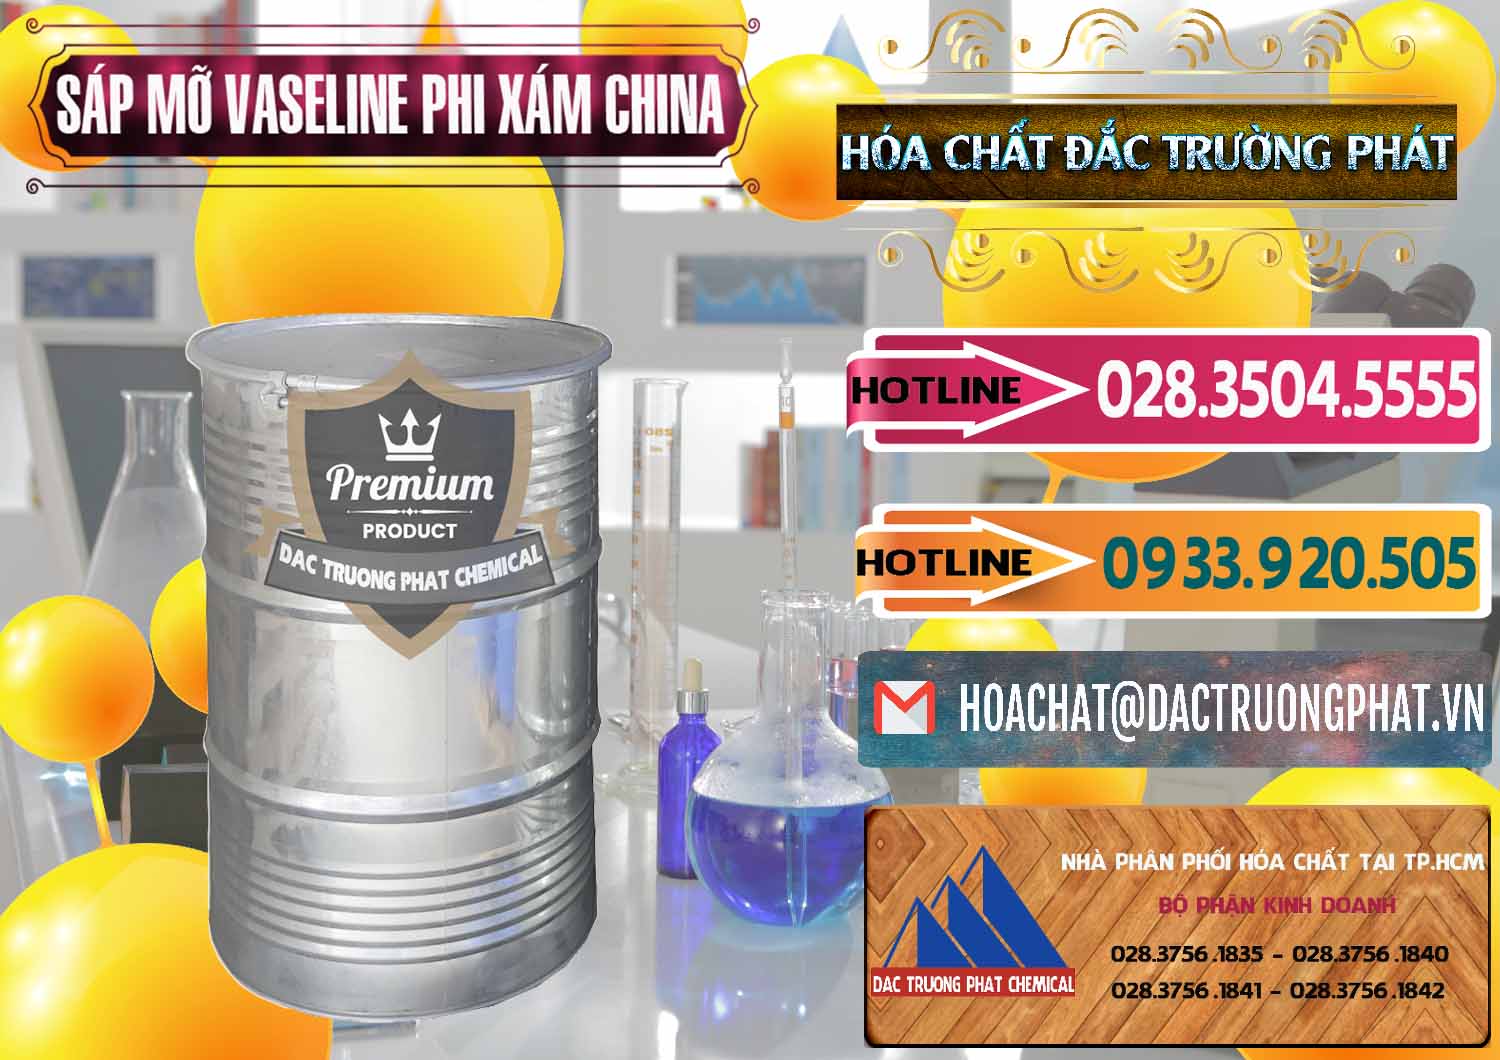 Nơi cung cấp - bán Sáp Mỡ Vaseline Phi Xám Trung Quốc China - 0291 - Nhà nhập khẩu & phân phối hóa chất tại TP.HCM - dactruongphat.vn